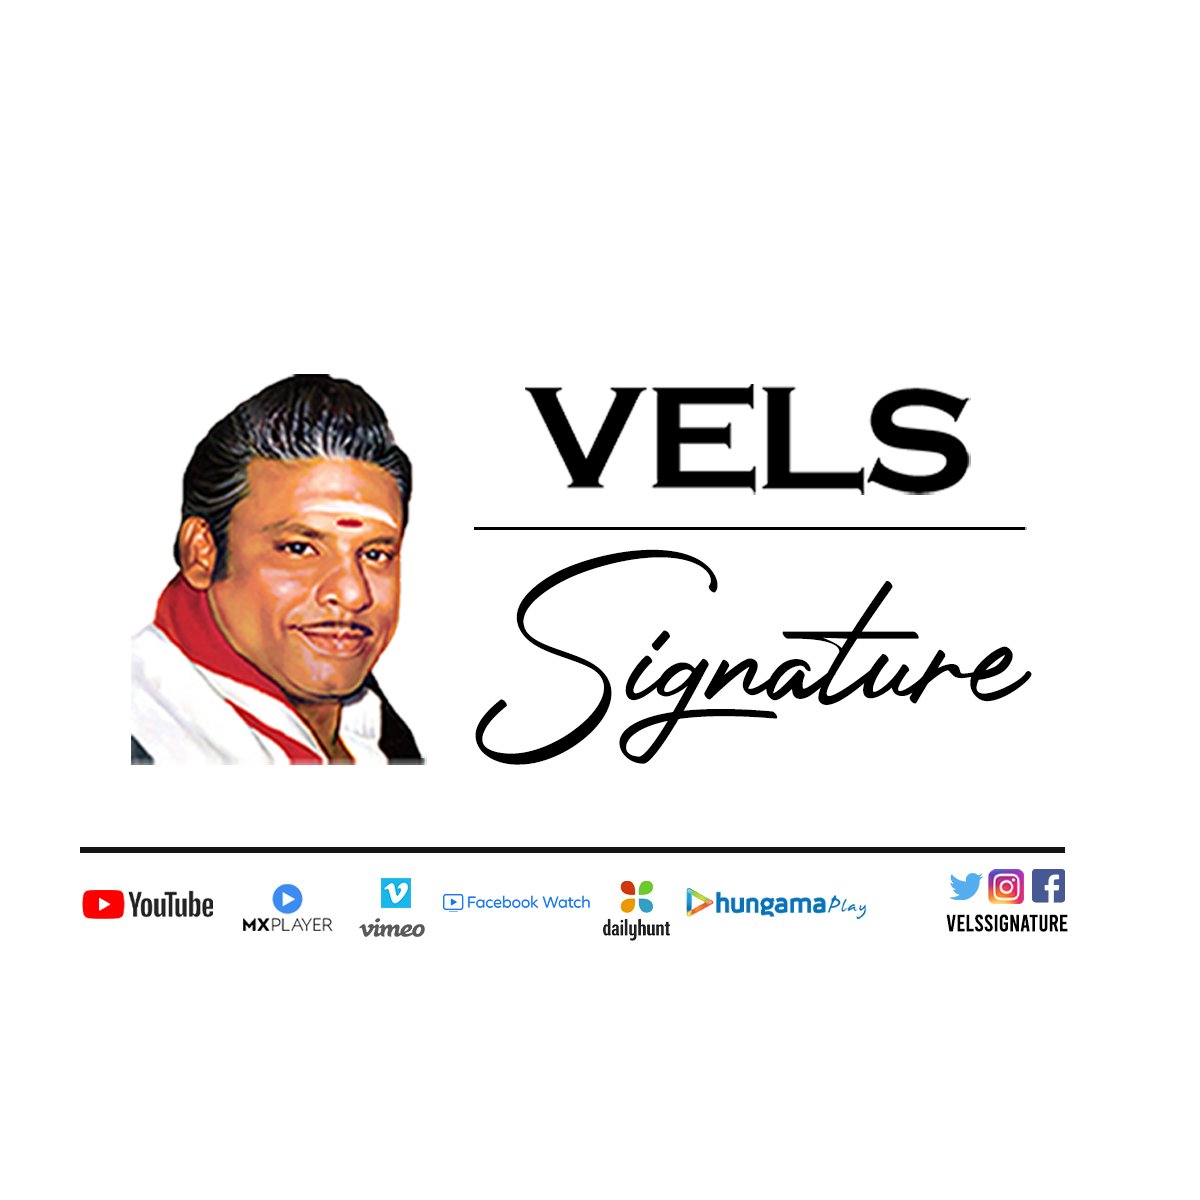 வேல்ஸ் குழுமத்தின் புதிய அறிமுகம் “Vels Signature” !